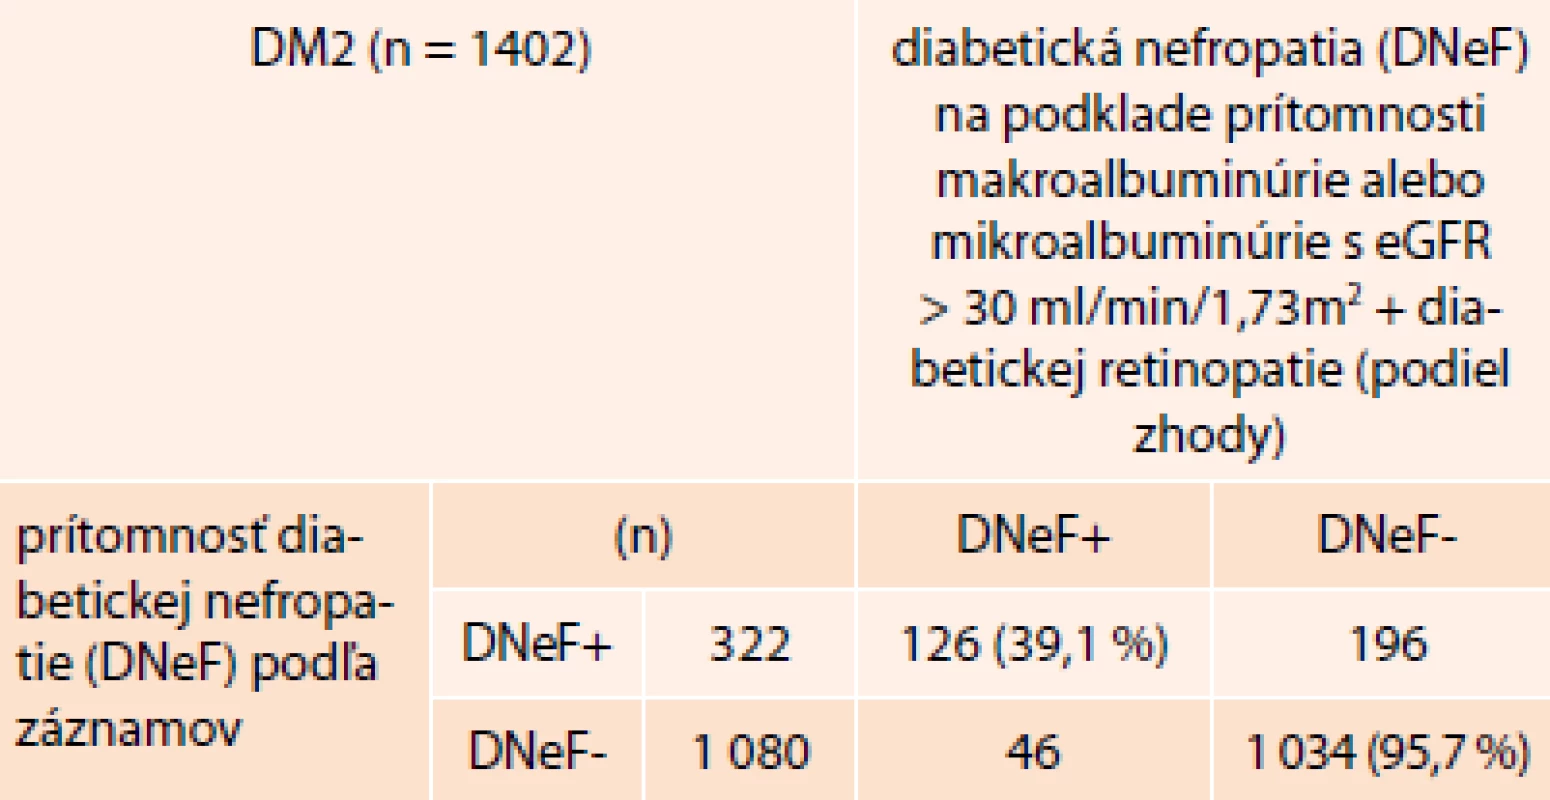 Zhoda/nezhoda v diagnóze diabetickej nefropatie (DNeF) podľa zápisu z dokumentácie a podľa aktuálnych hodnôt UACR s ohľadom na eGFR a retinopatiu (iba pacienti s DM2T)